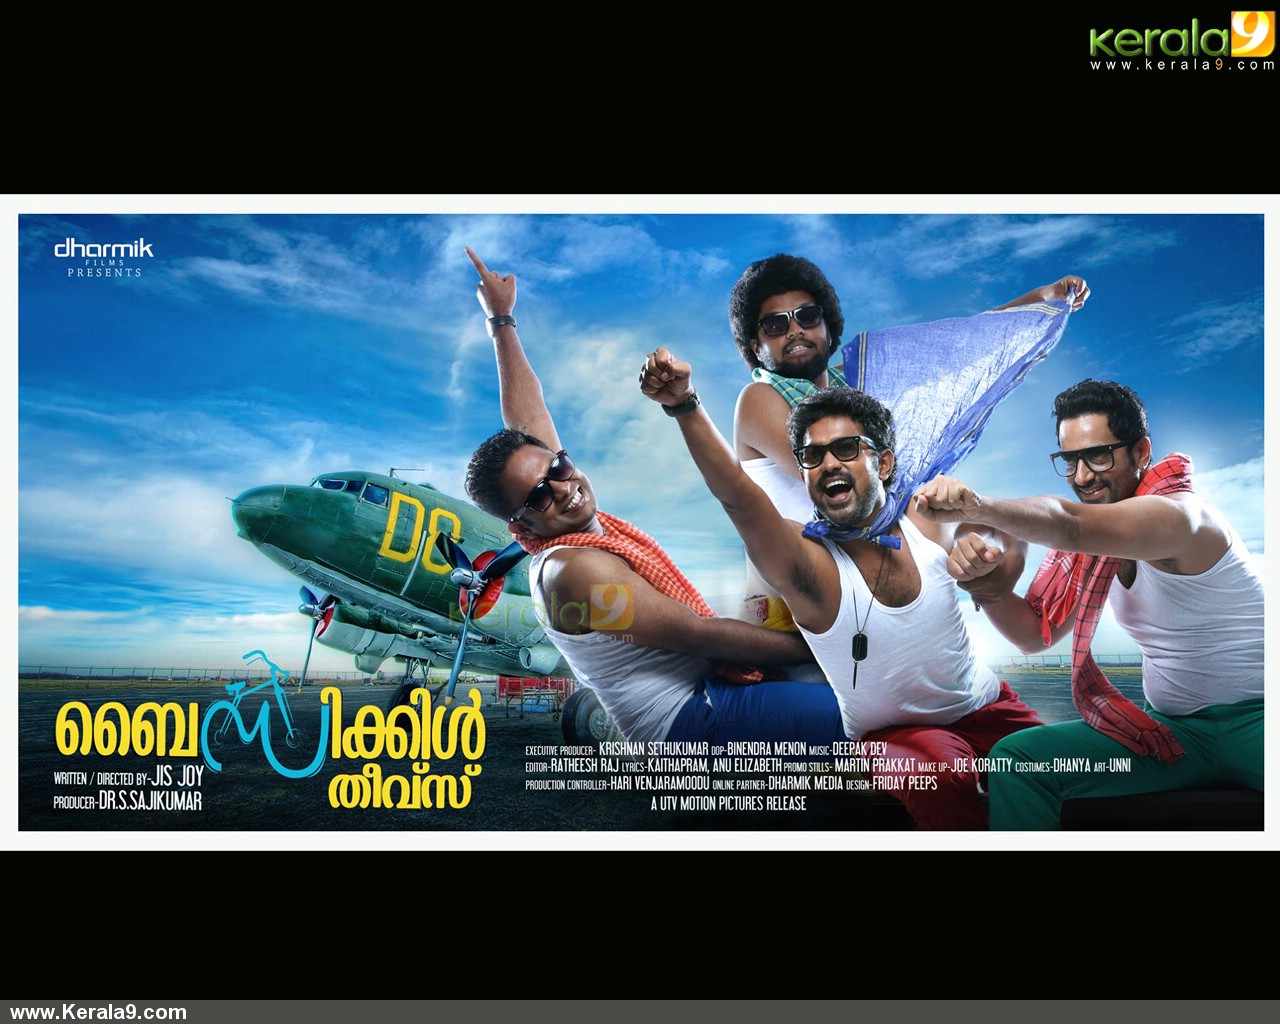 Malayalam Movie , HD Wallpaper & Backgrounds